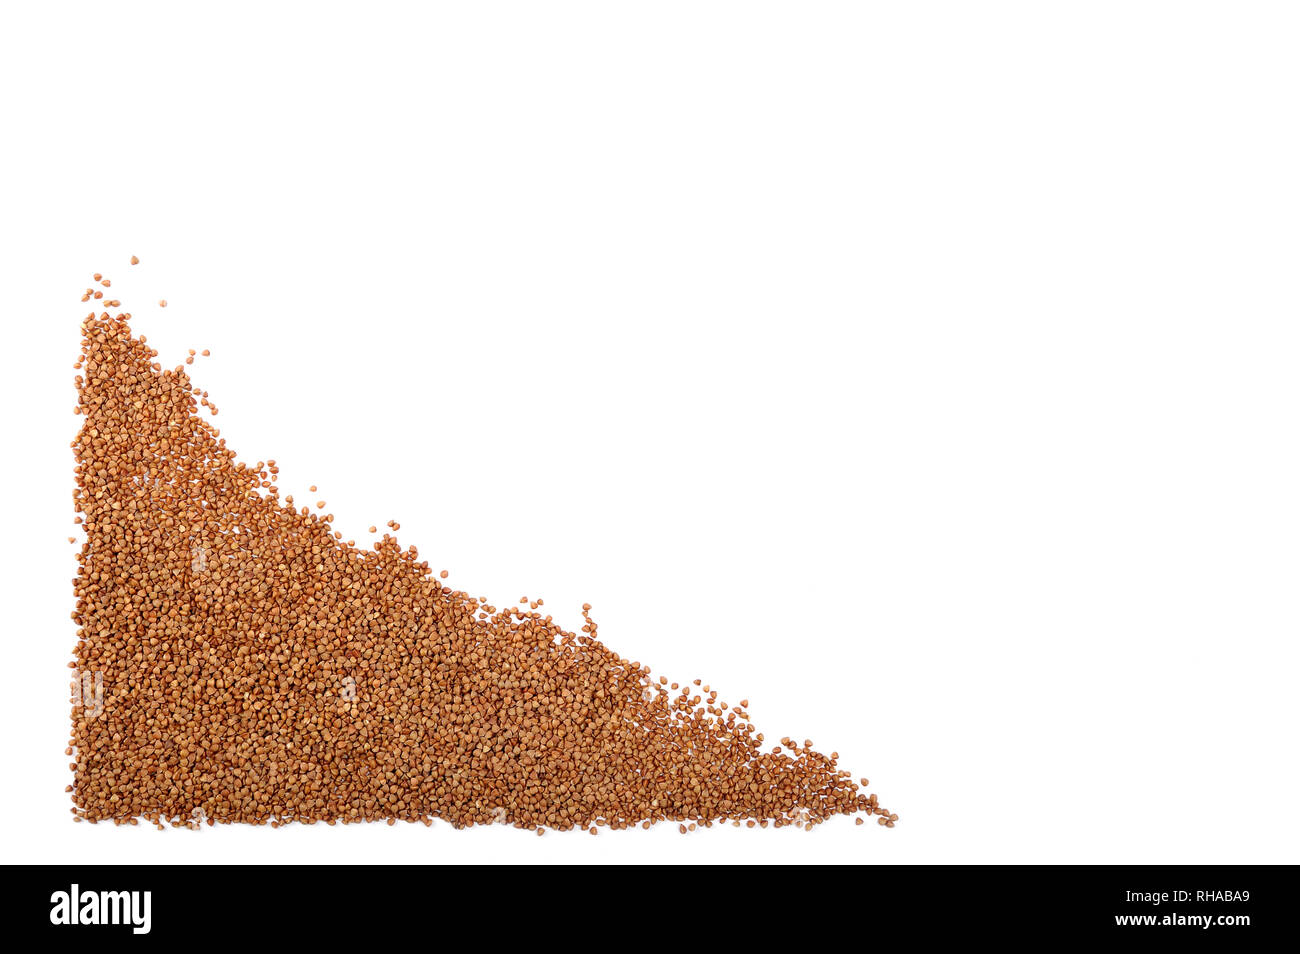 Organische buckweat auf Weiß isoliert. Buchweizen Korn enthält kein Gluten, es kann für Menschen mit gluten- Erkrankungen. Lebensmittelgeschäft oder Diäten con gegessen werden Stockfoto